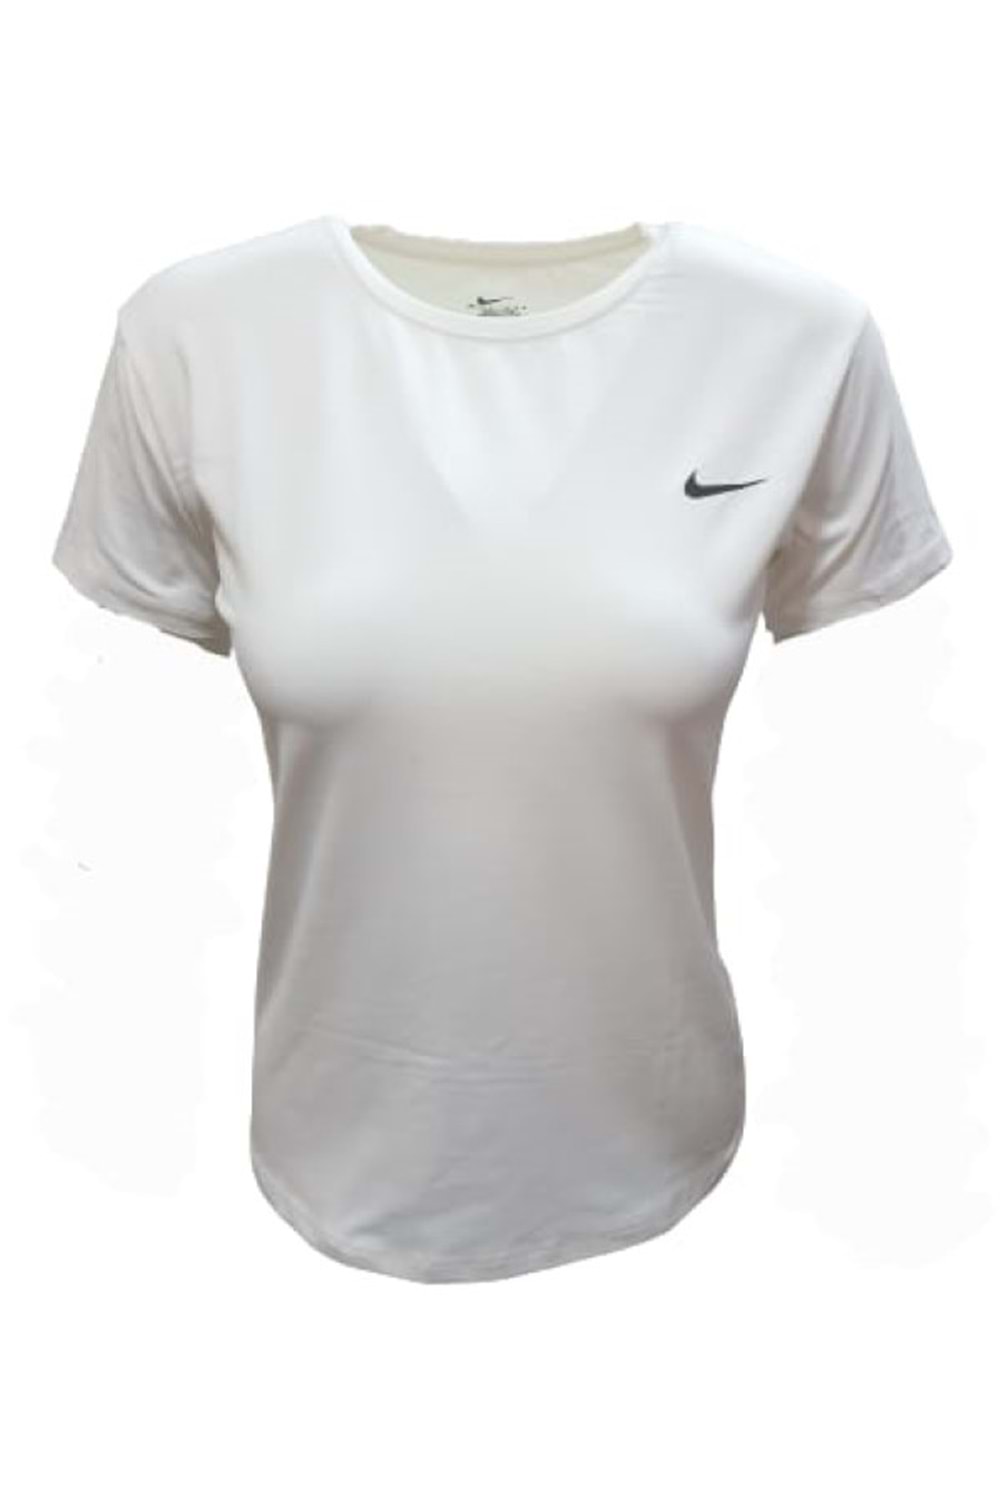 Nike Kadın Kısa Kol Sıfır Yaka T-shirt 01270 - Krem - L